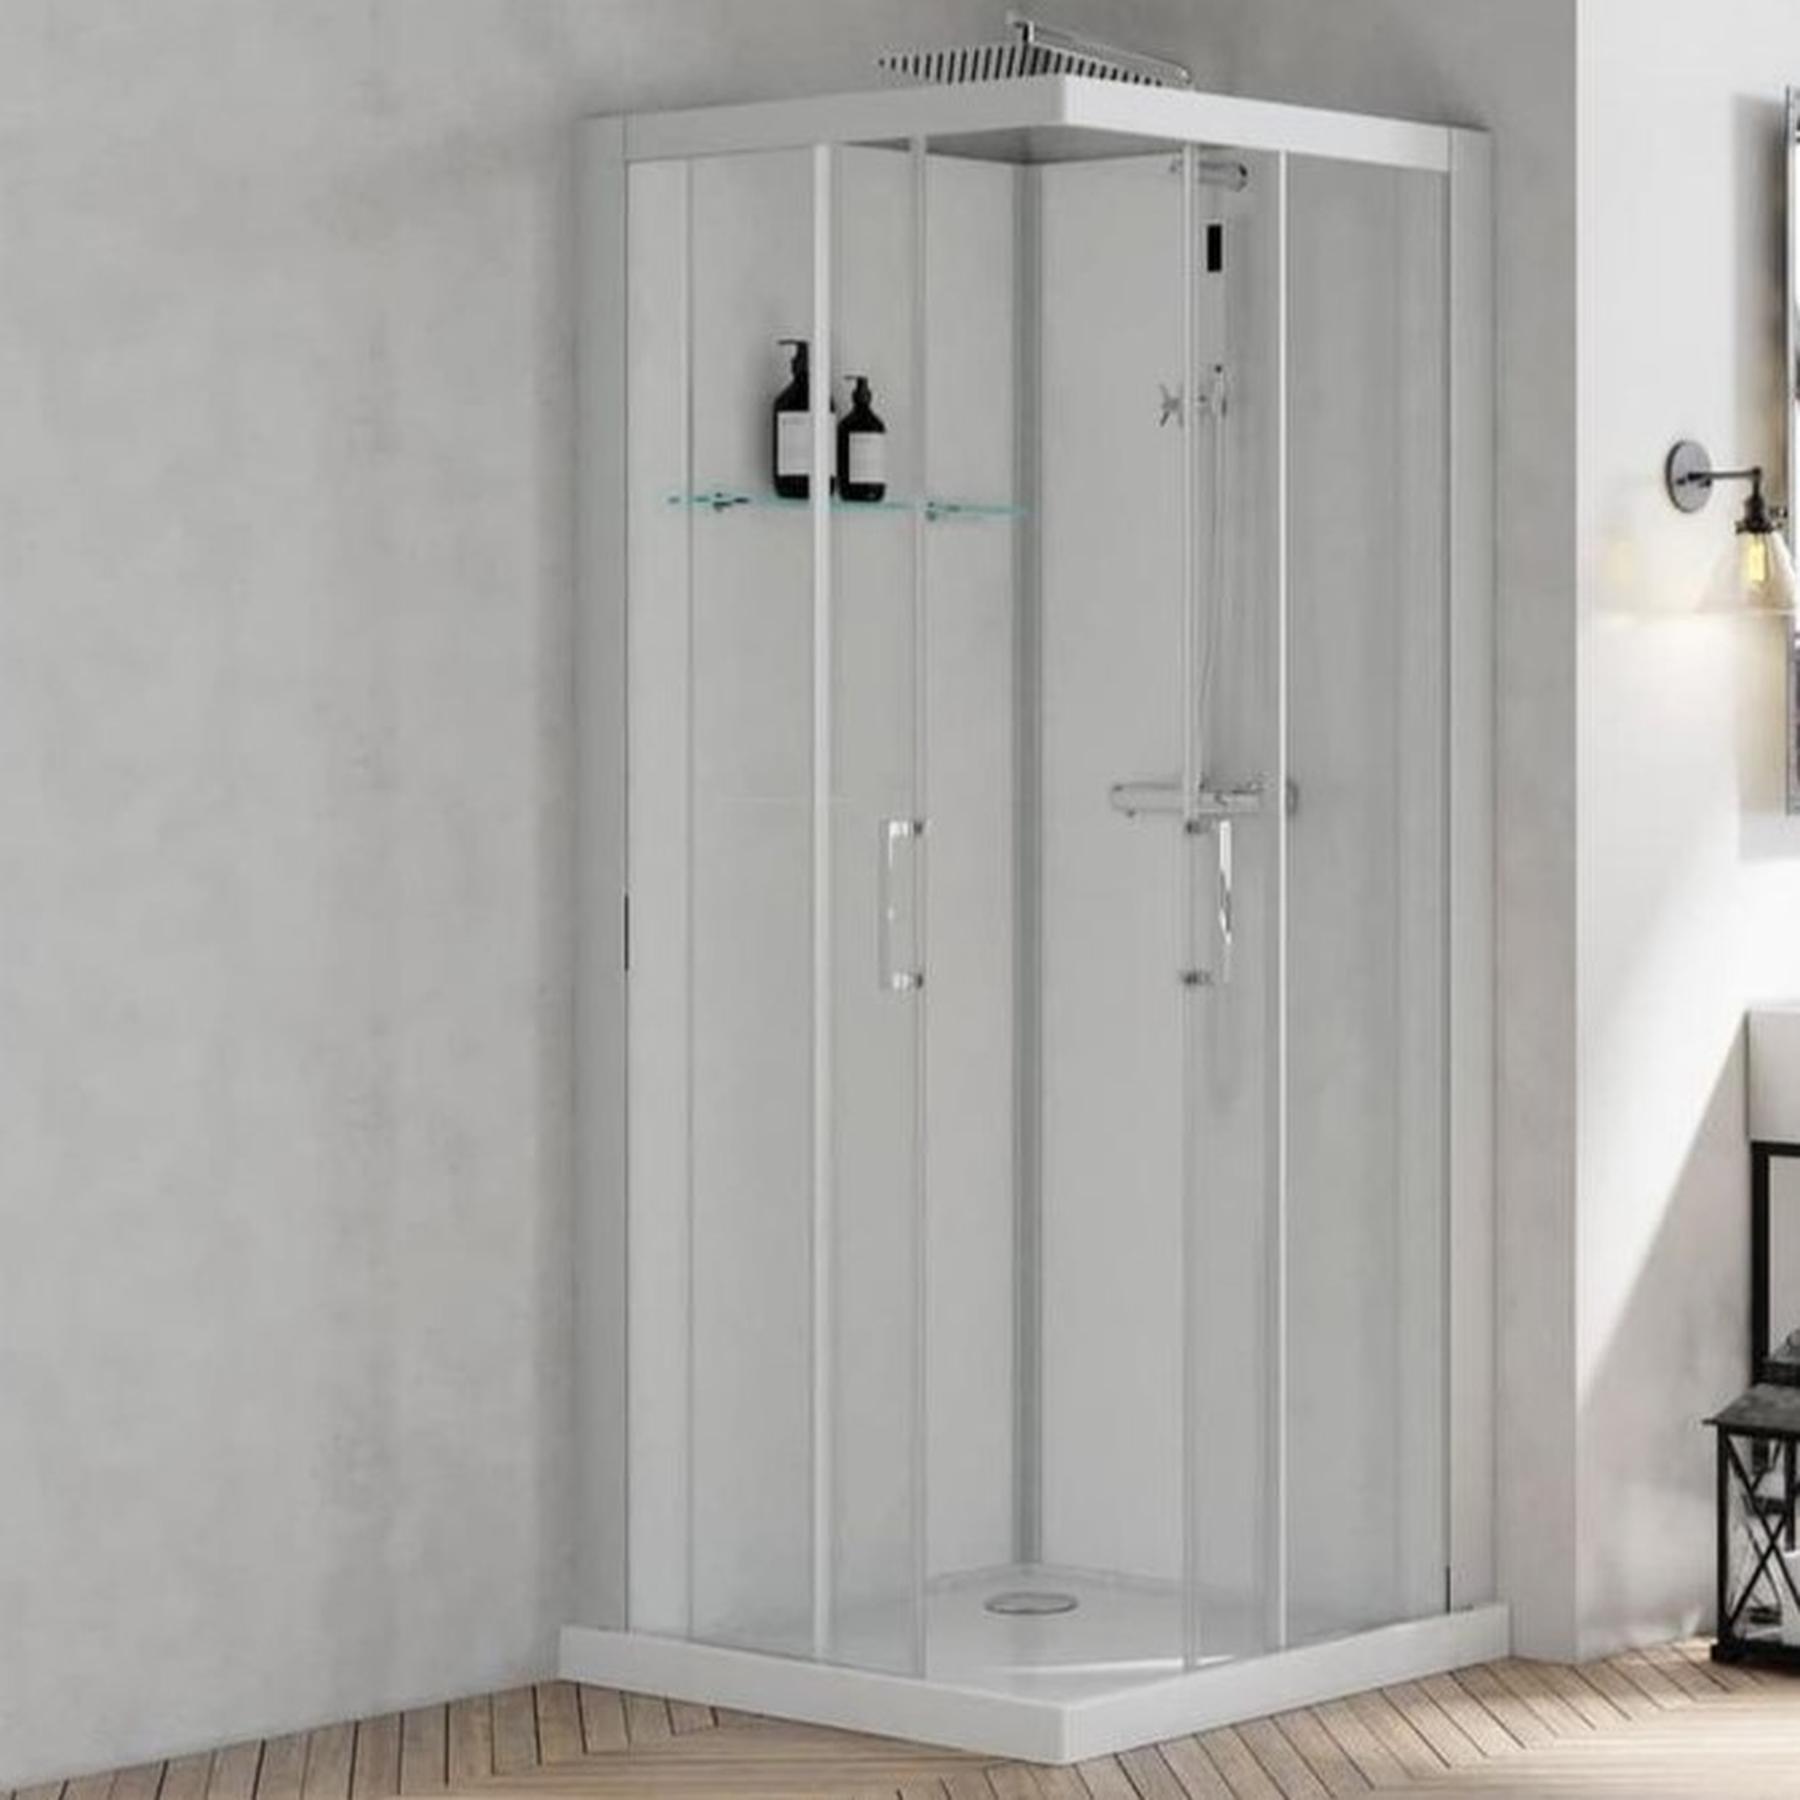 Cabine de douche BROOKLYN profilés gris clair porte coulissante 90x90 8.5 cm verre transparent mitigeur thermostatique fond en verre blanc